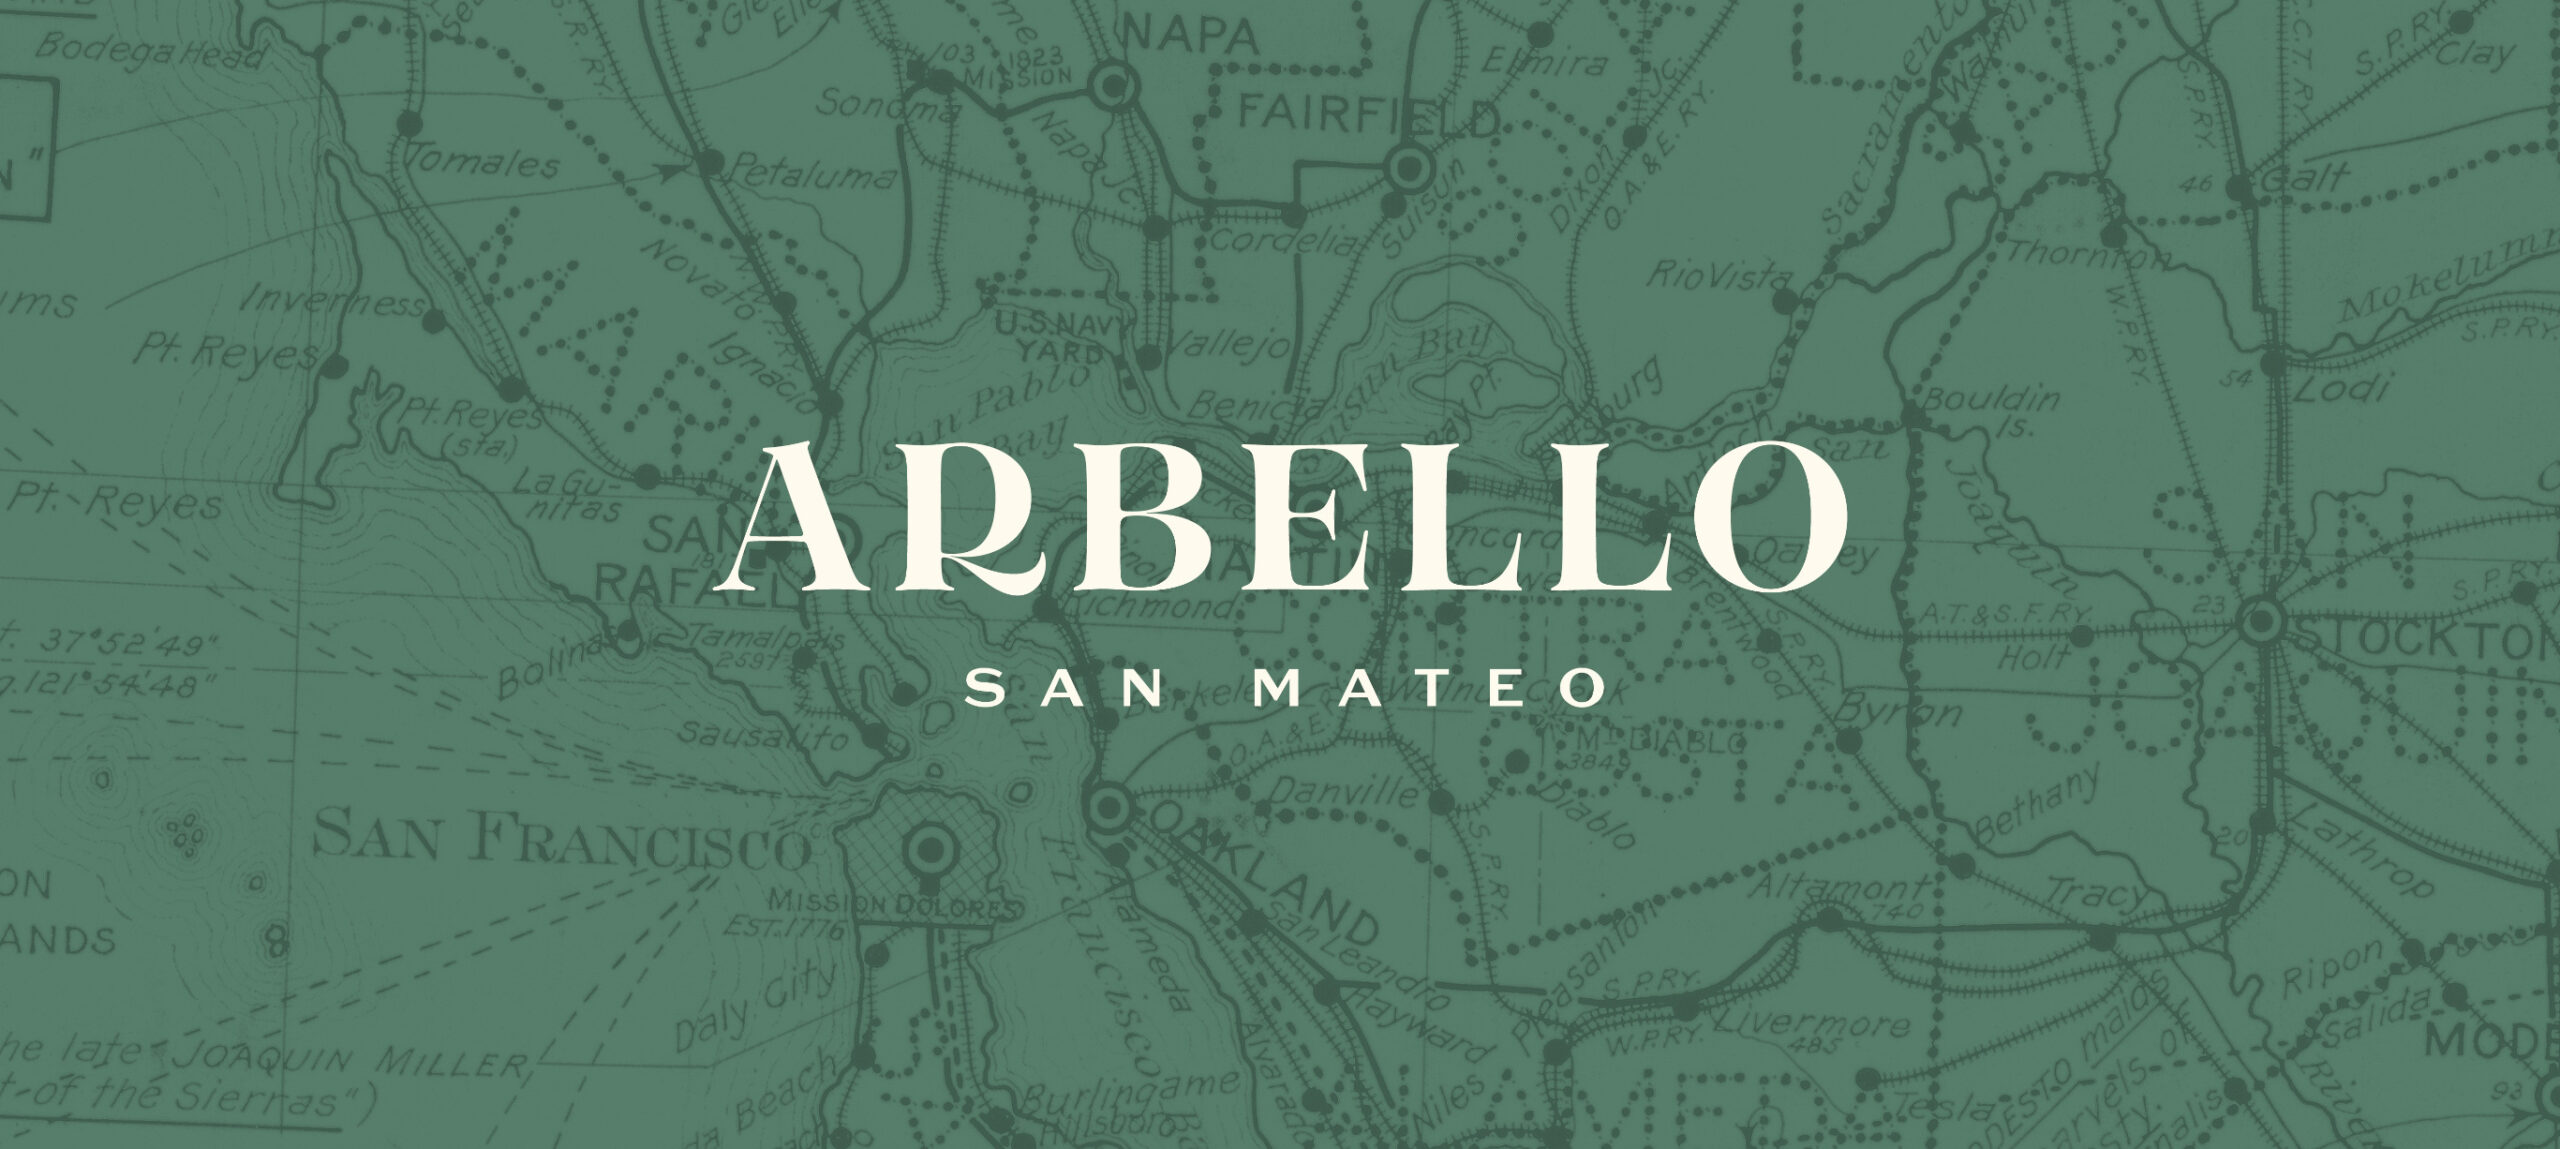 Arbello logo over graphic